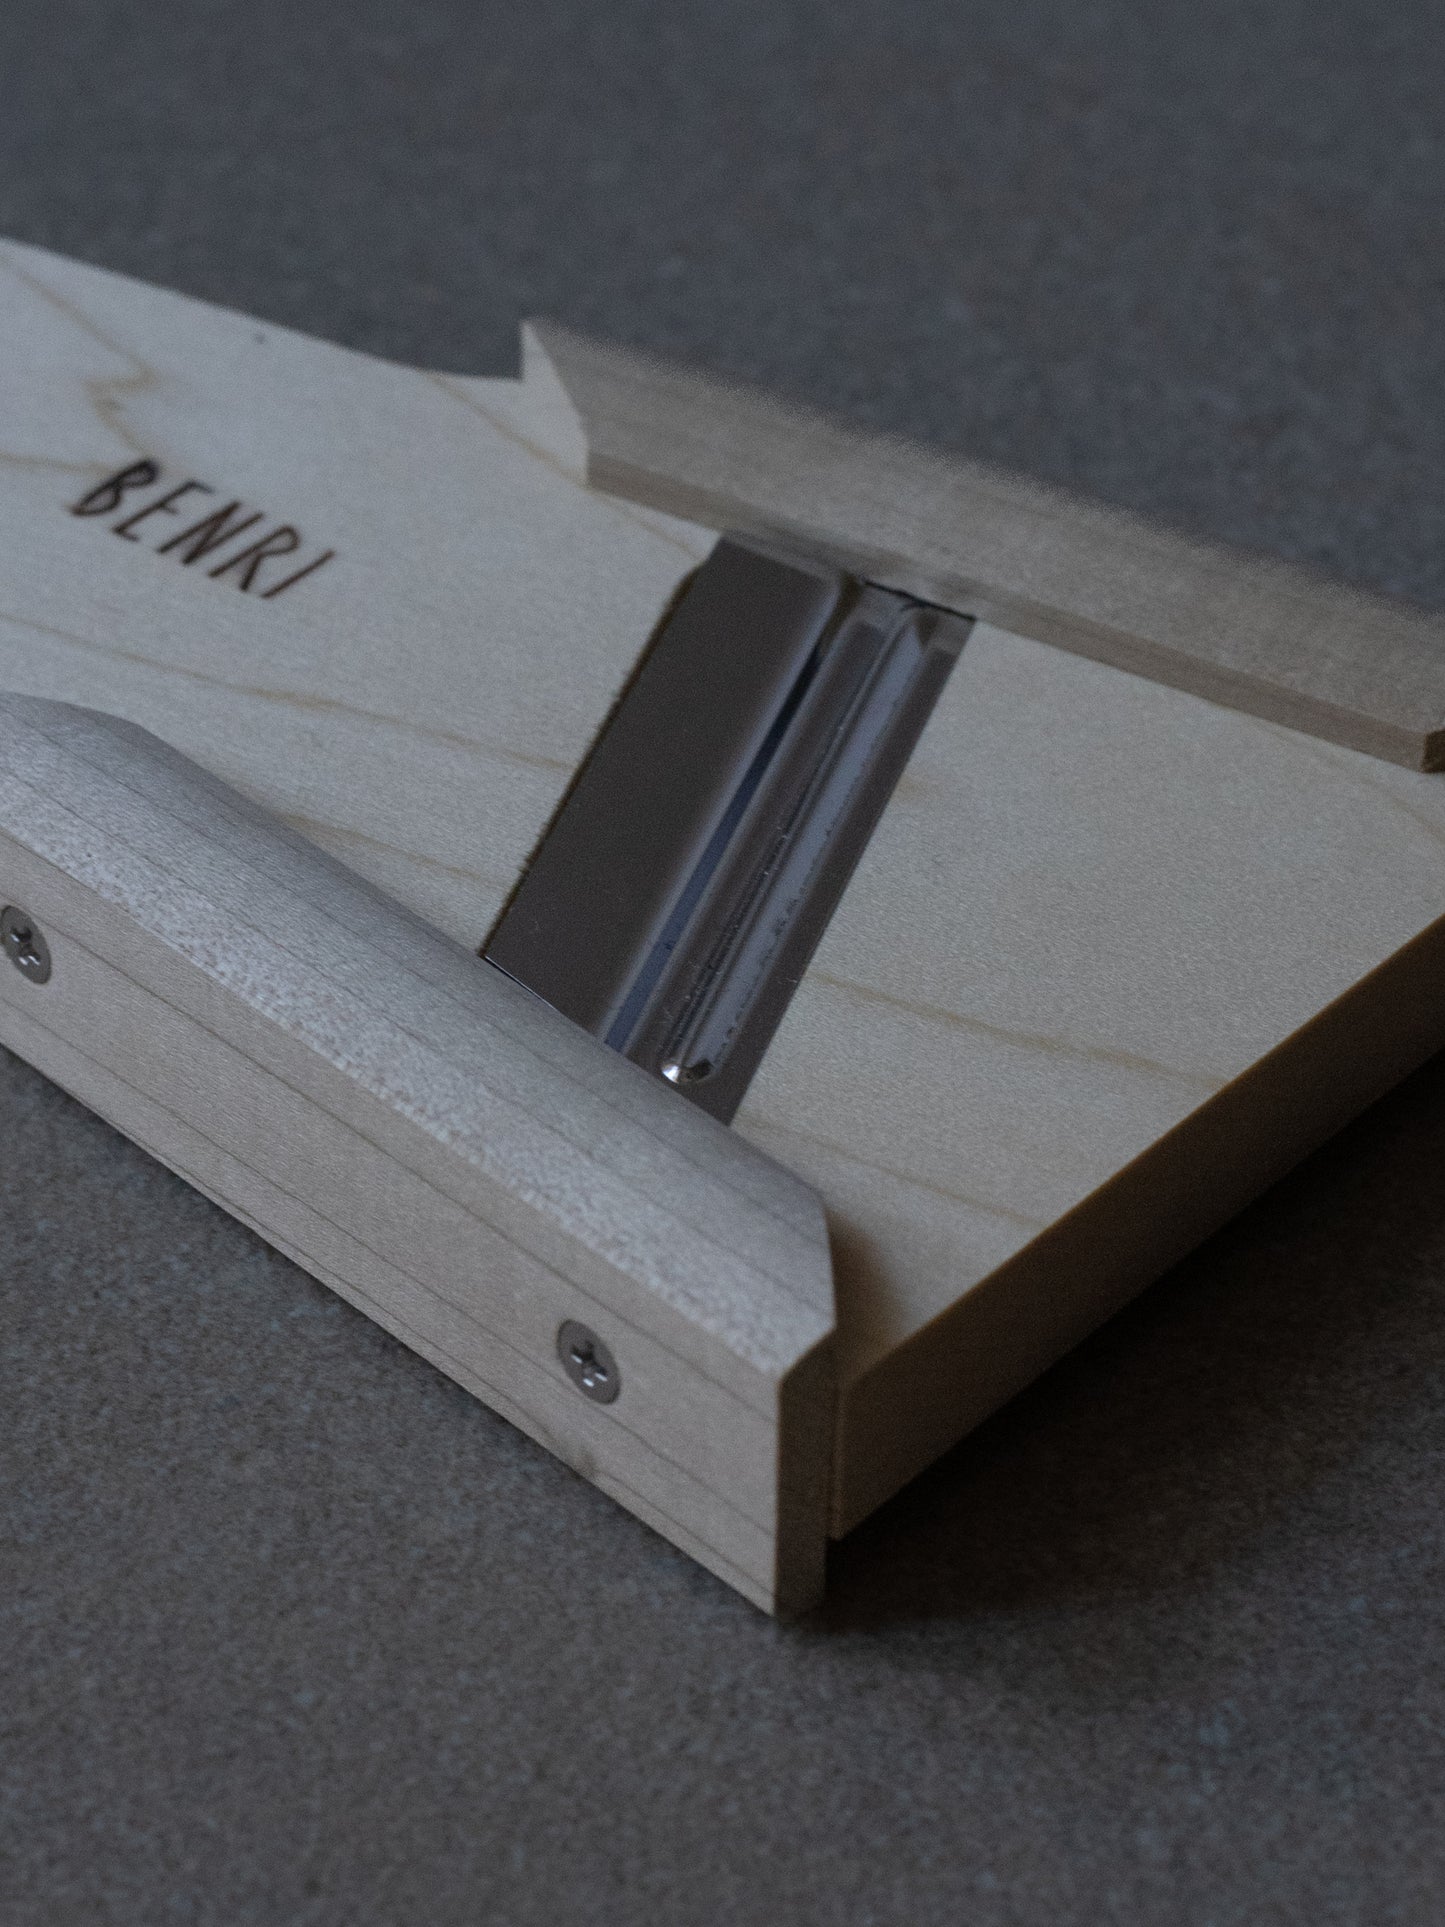 Wooden Mandoline Slicer - Small